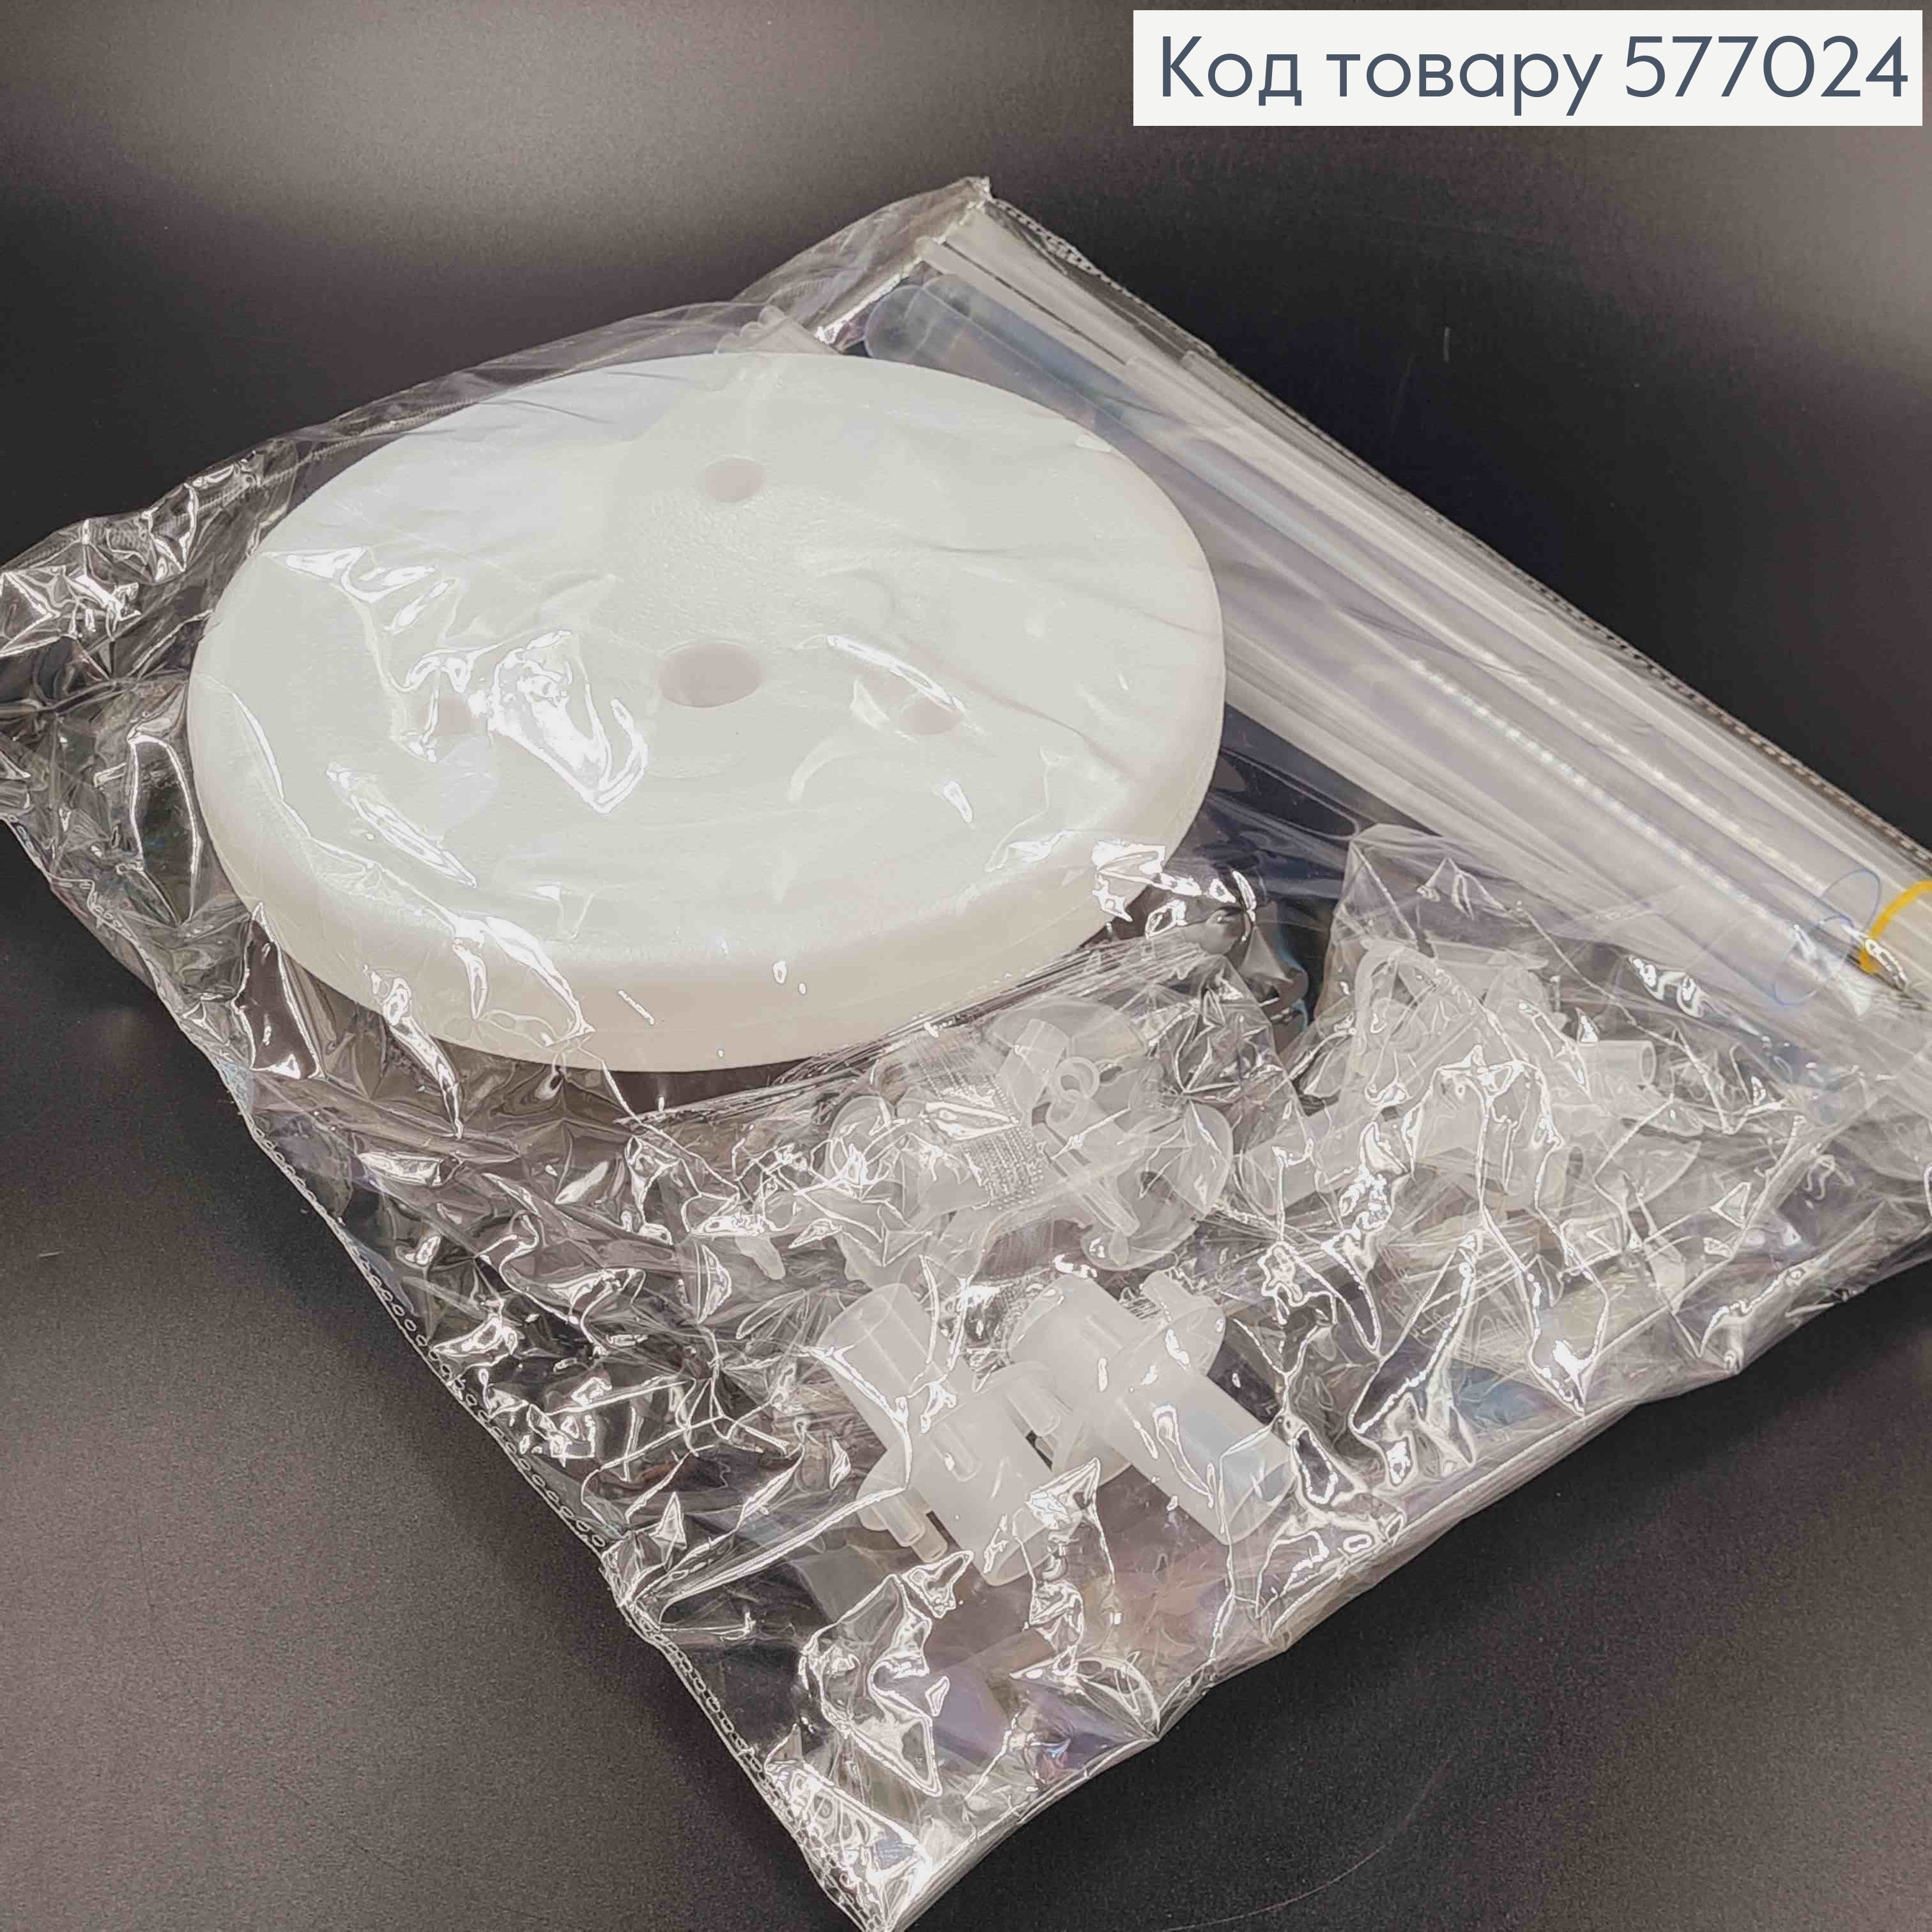 Подставка-держатель для воздушных шаров, пластиковая с отсеком для воды, 70*40*65см 577024 фото 2